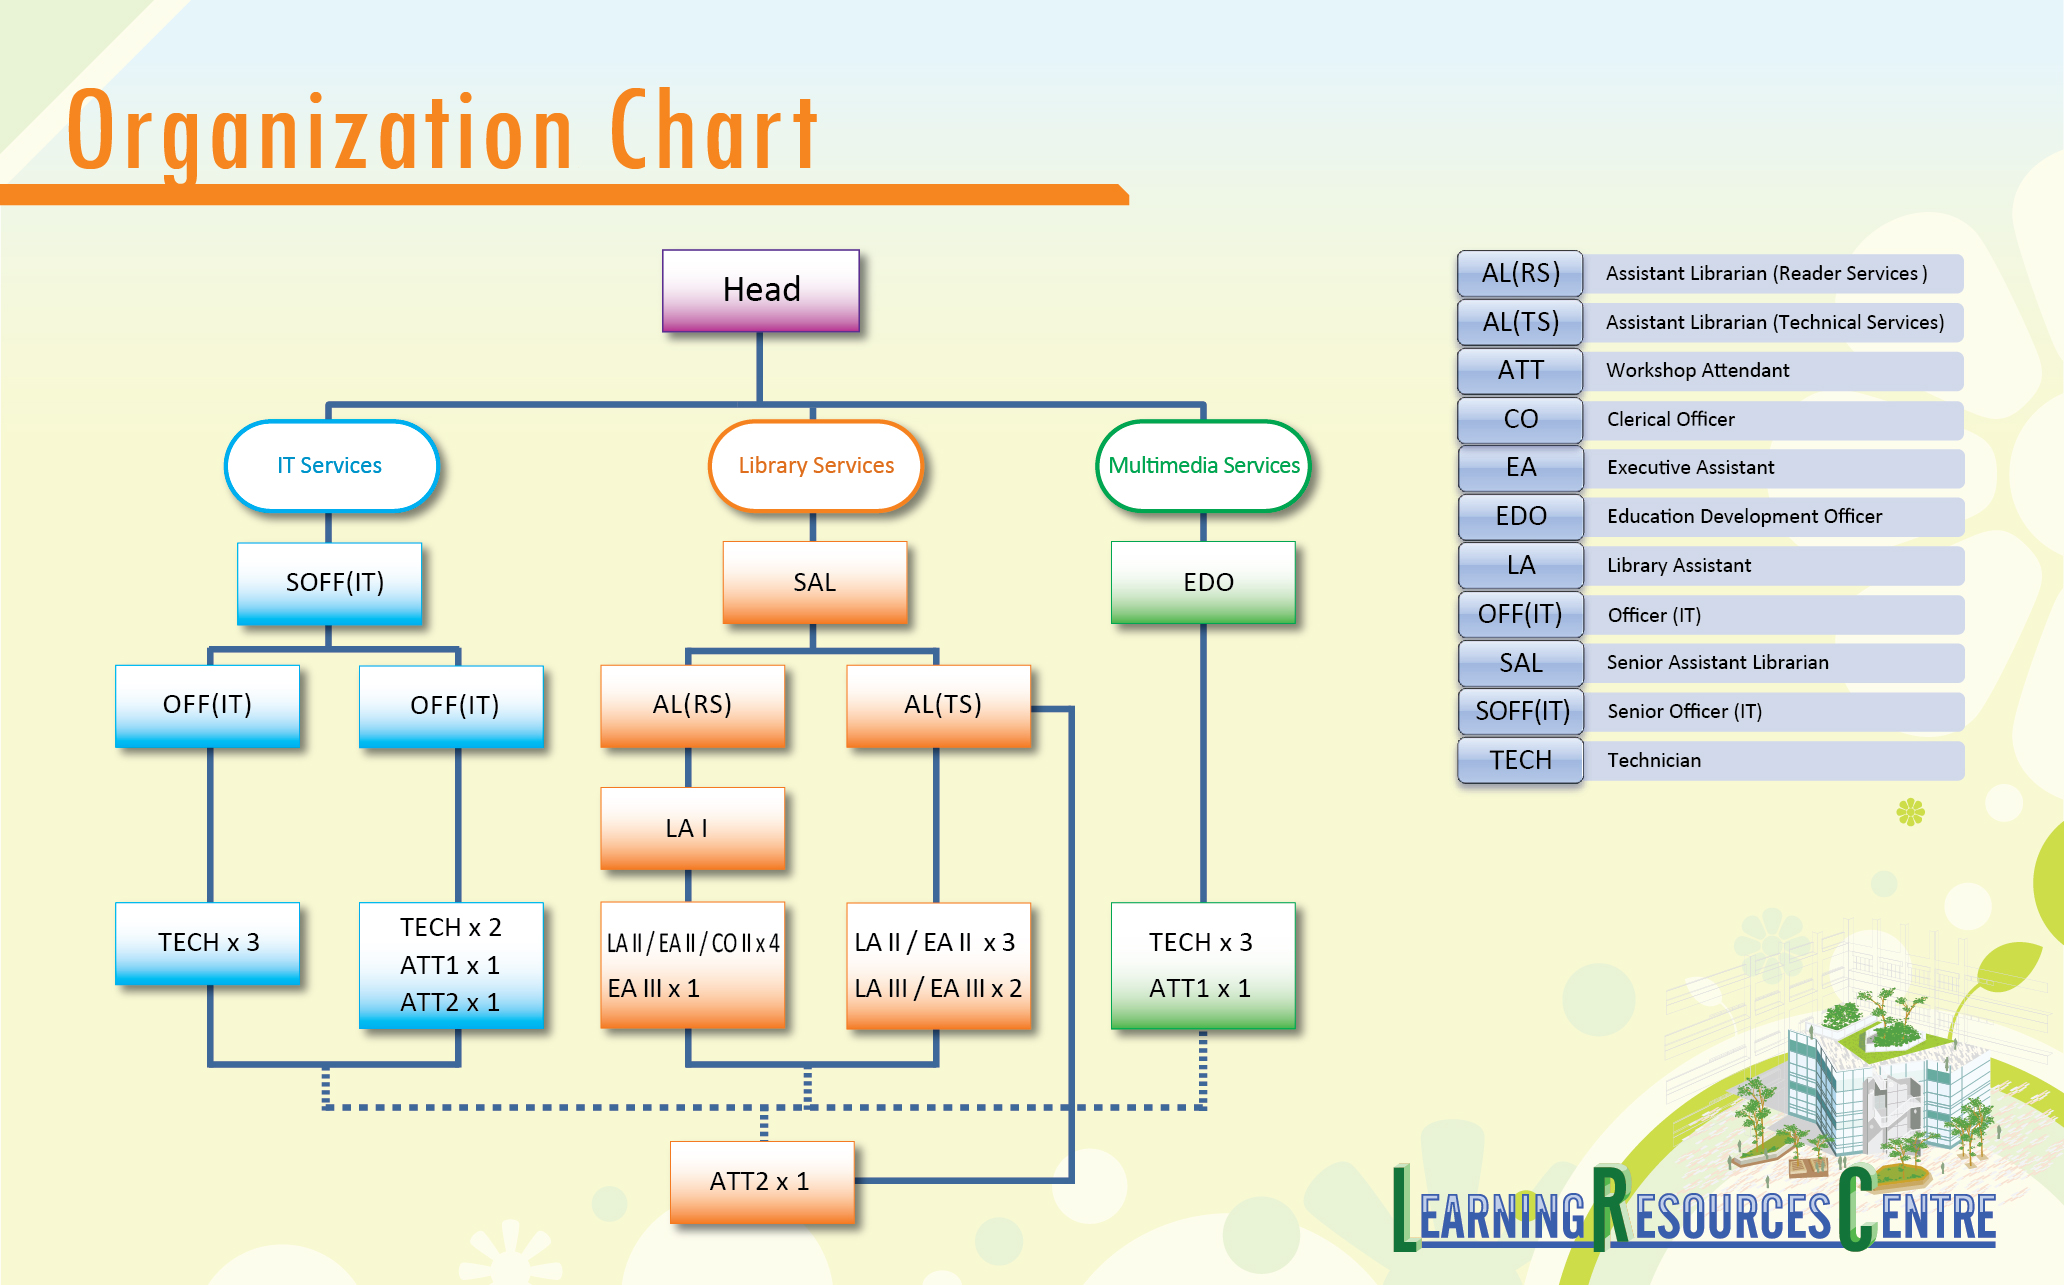 Organization Chart ¬[ºc¹Ïªí